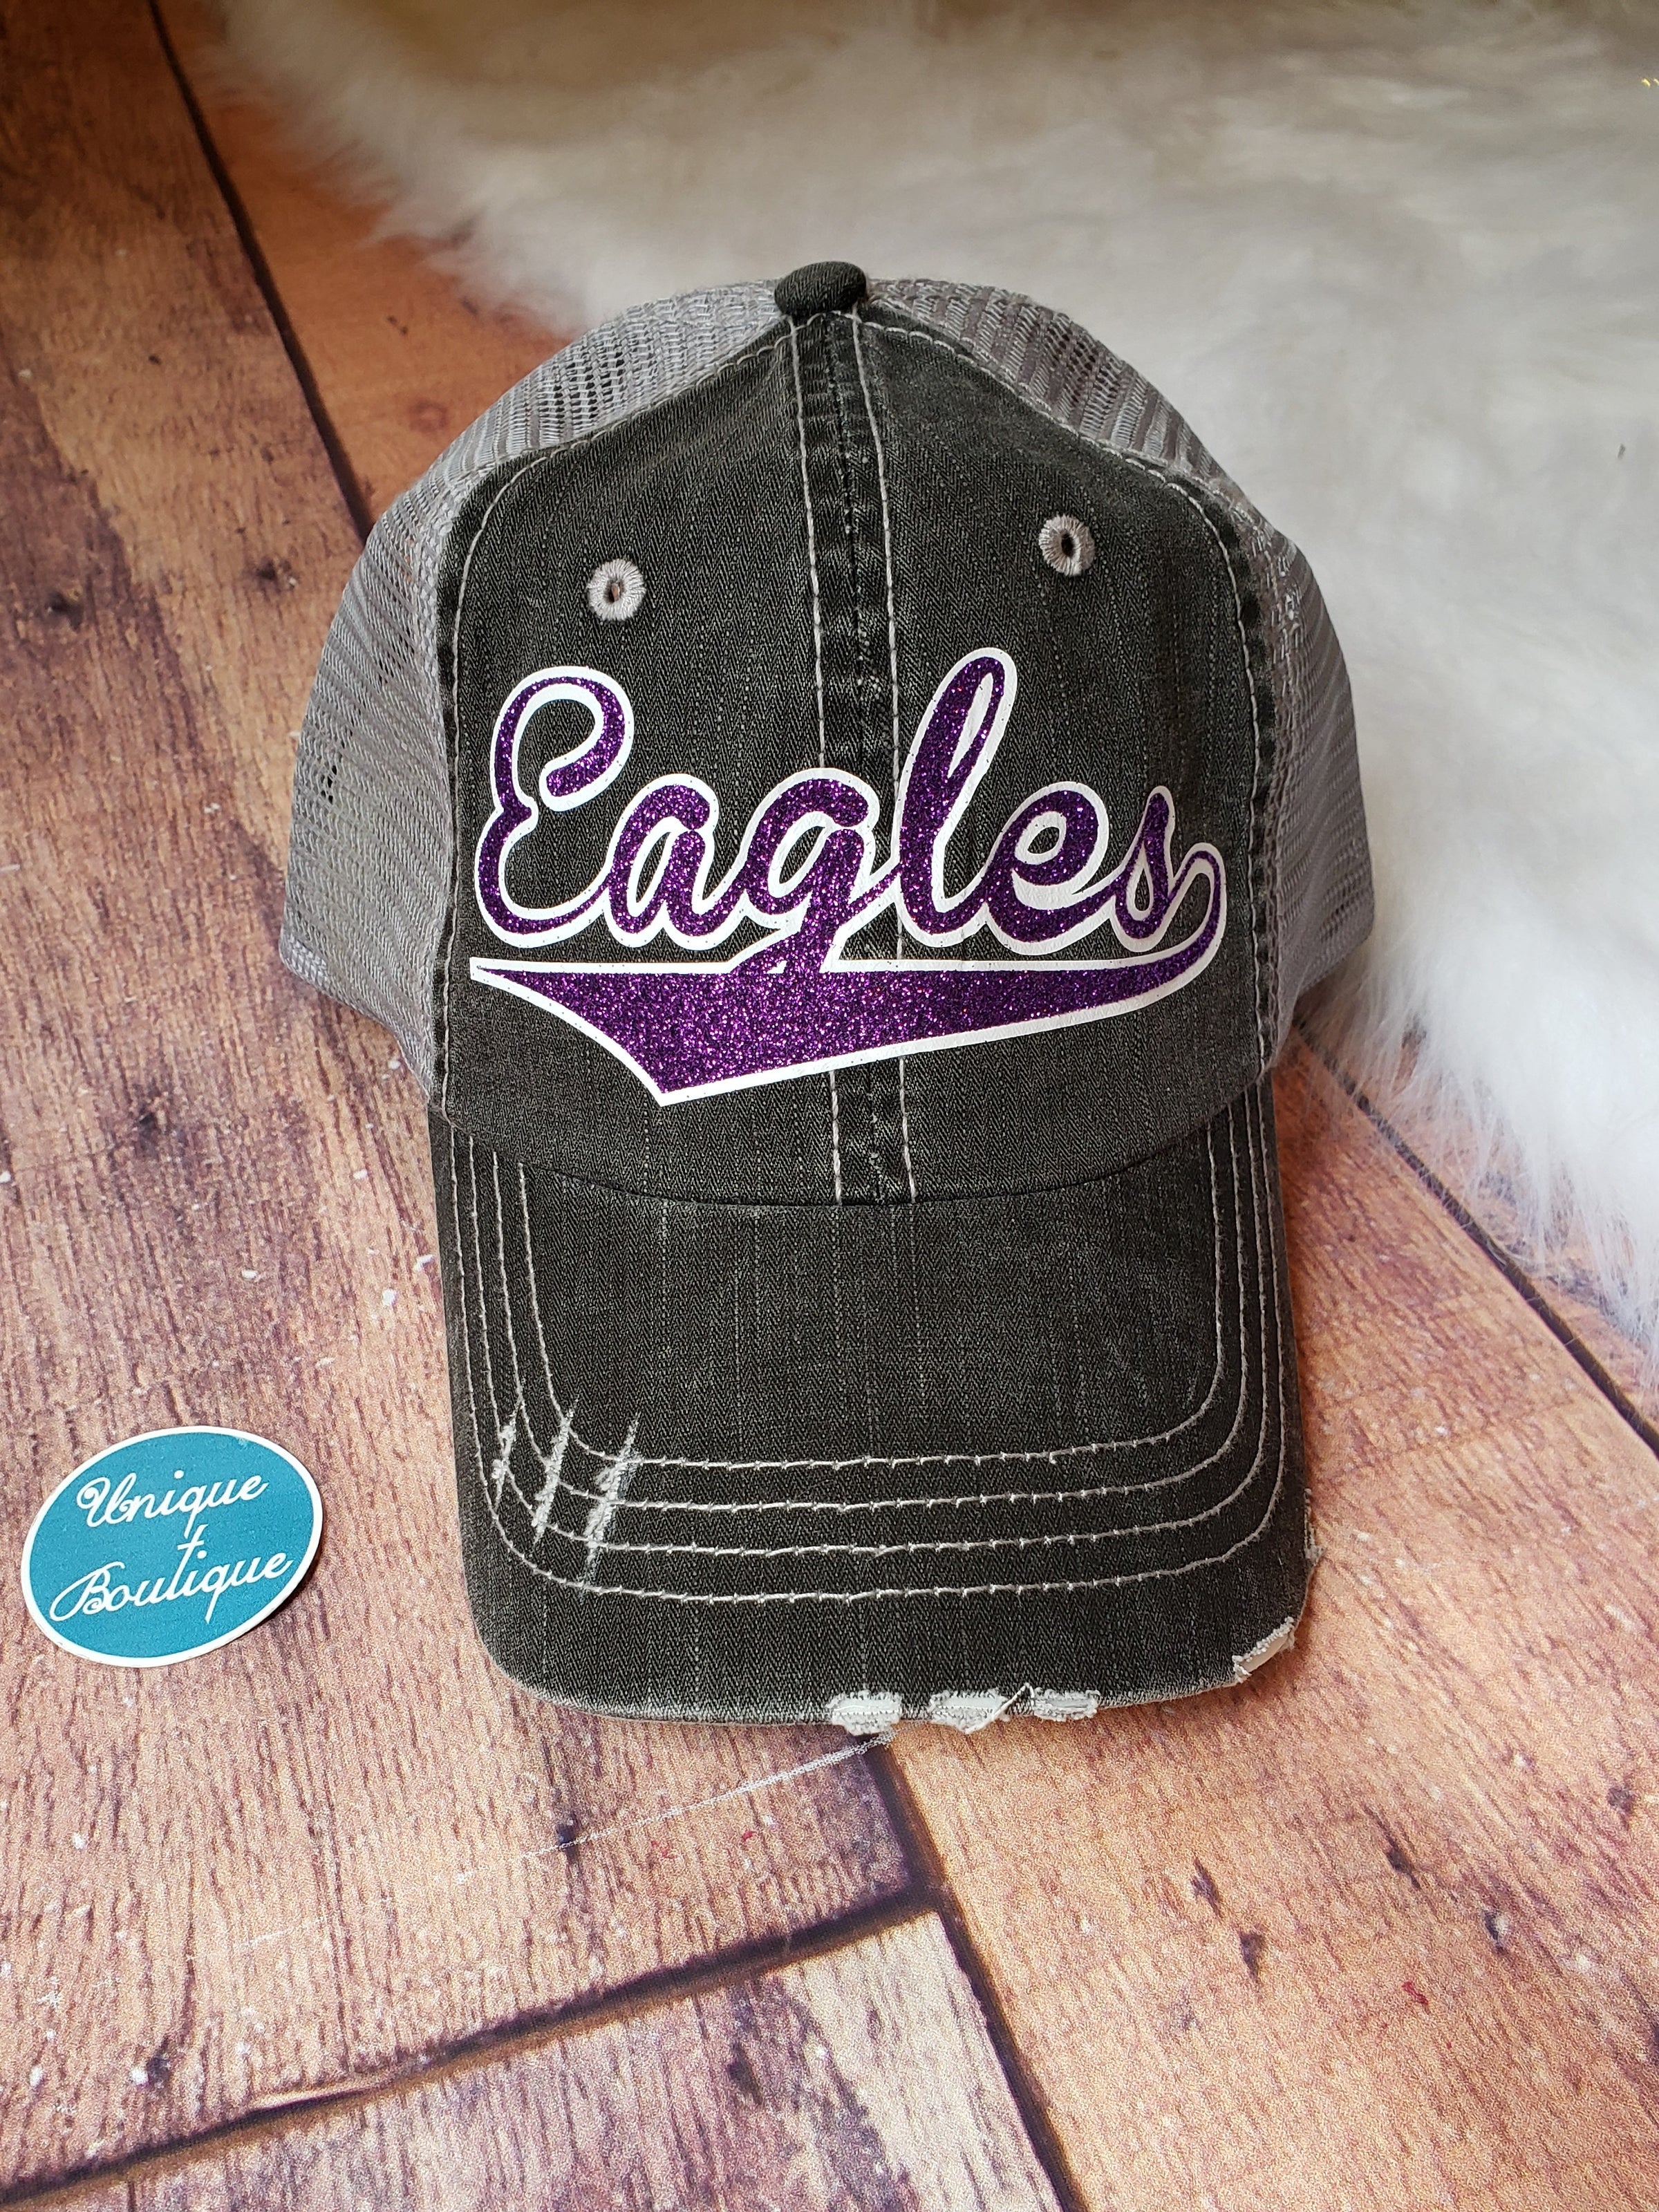 Eagles Trucker Hat - More Options – Unique Boutique